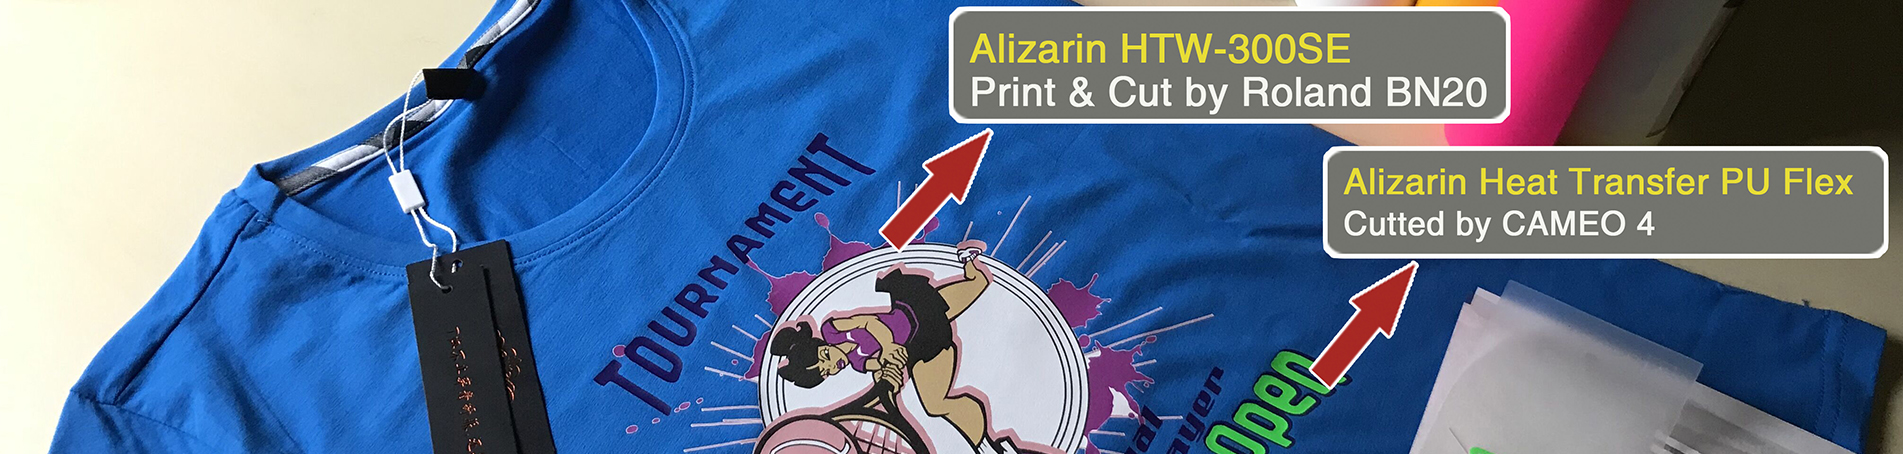 alizarin-banner1